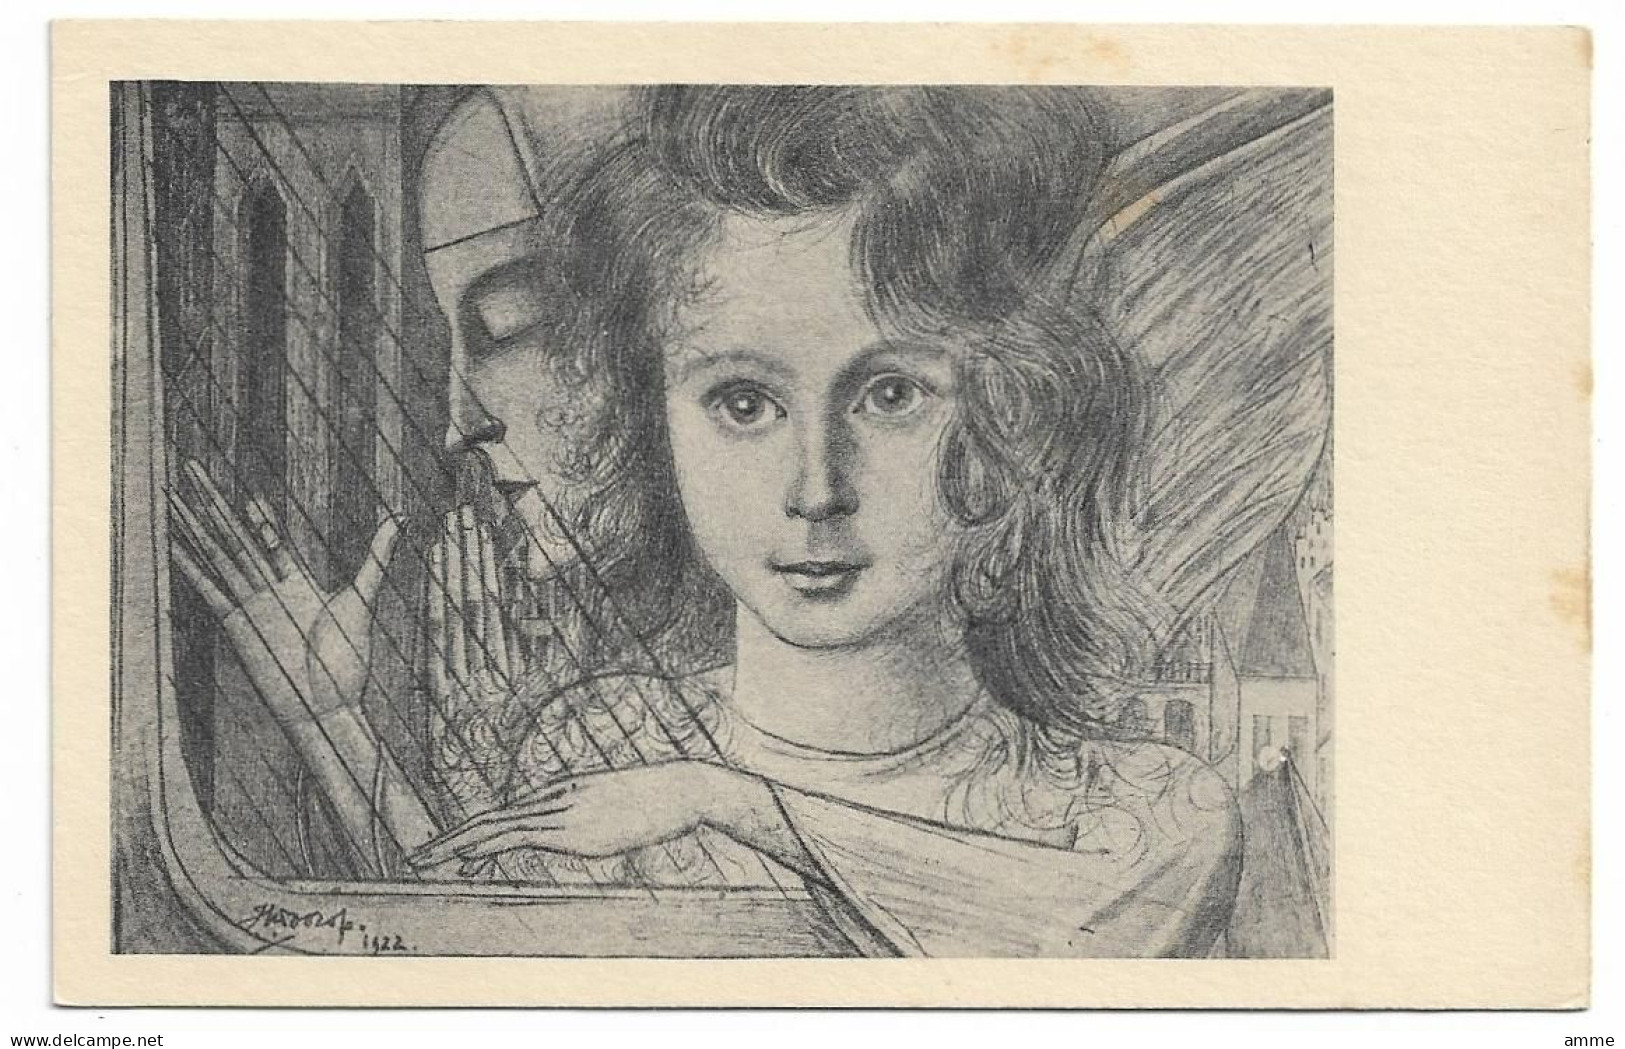 Vintage Postcard  *  Illustrator Jan Toorop  (Kind Met De Harp) - Toorop, Jan